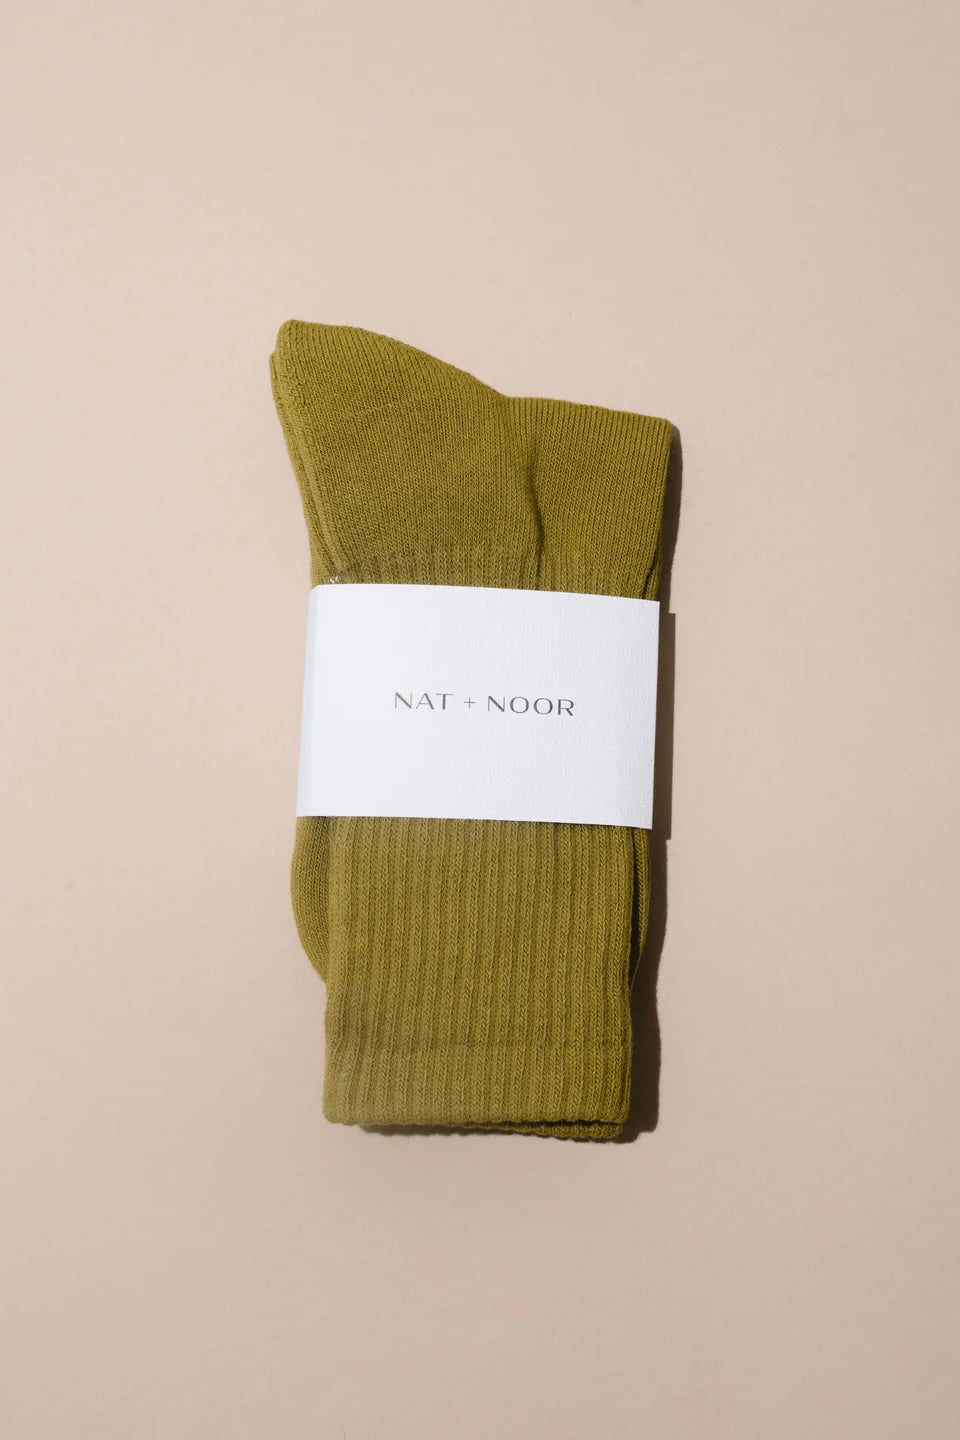 Nat + Noor Cotton Blend Crew Socks / Olive